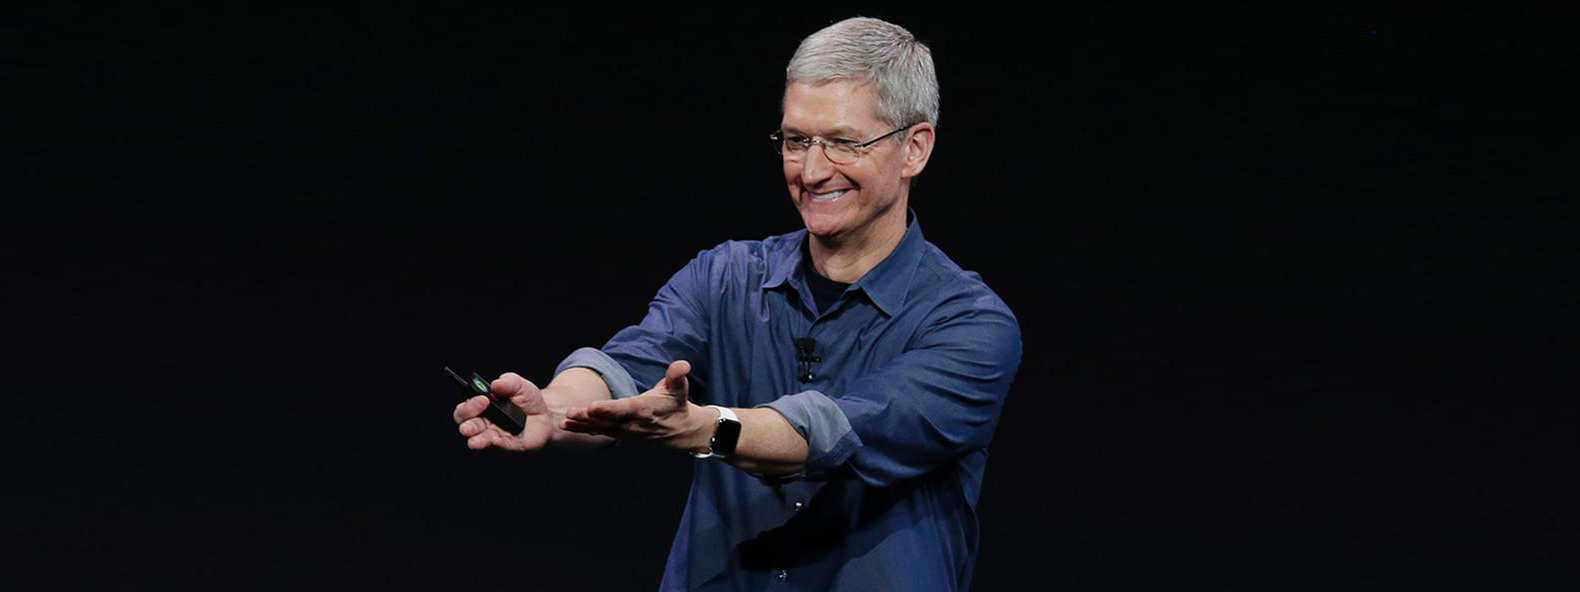 Apple: chúng tôi bảo mật thông tin sản phẩm để tôn trọng các kĩ sư, và cũng vì lý do kinh doanh nữa